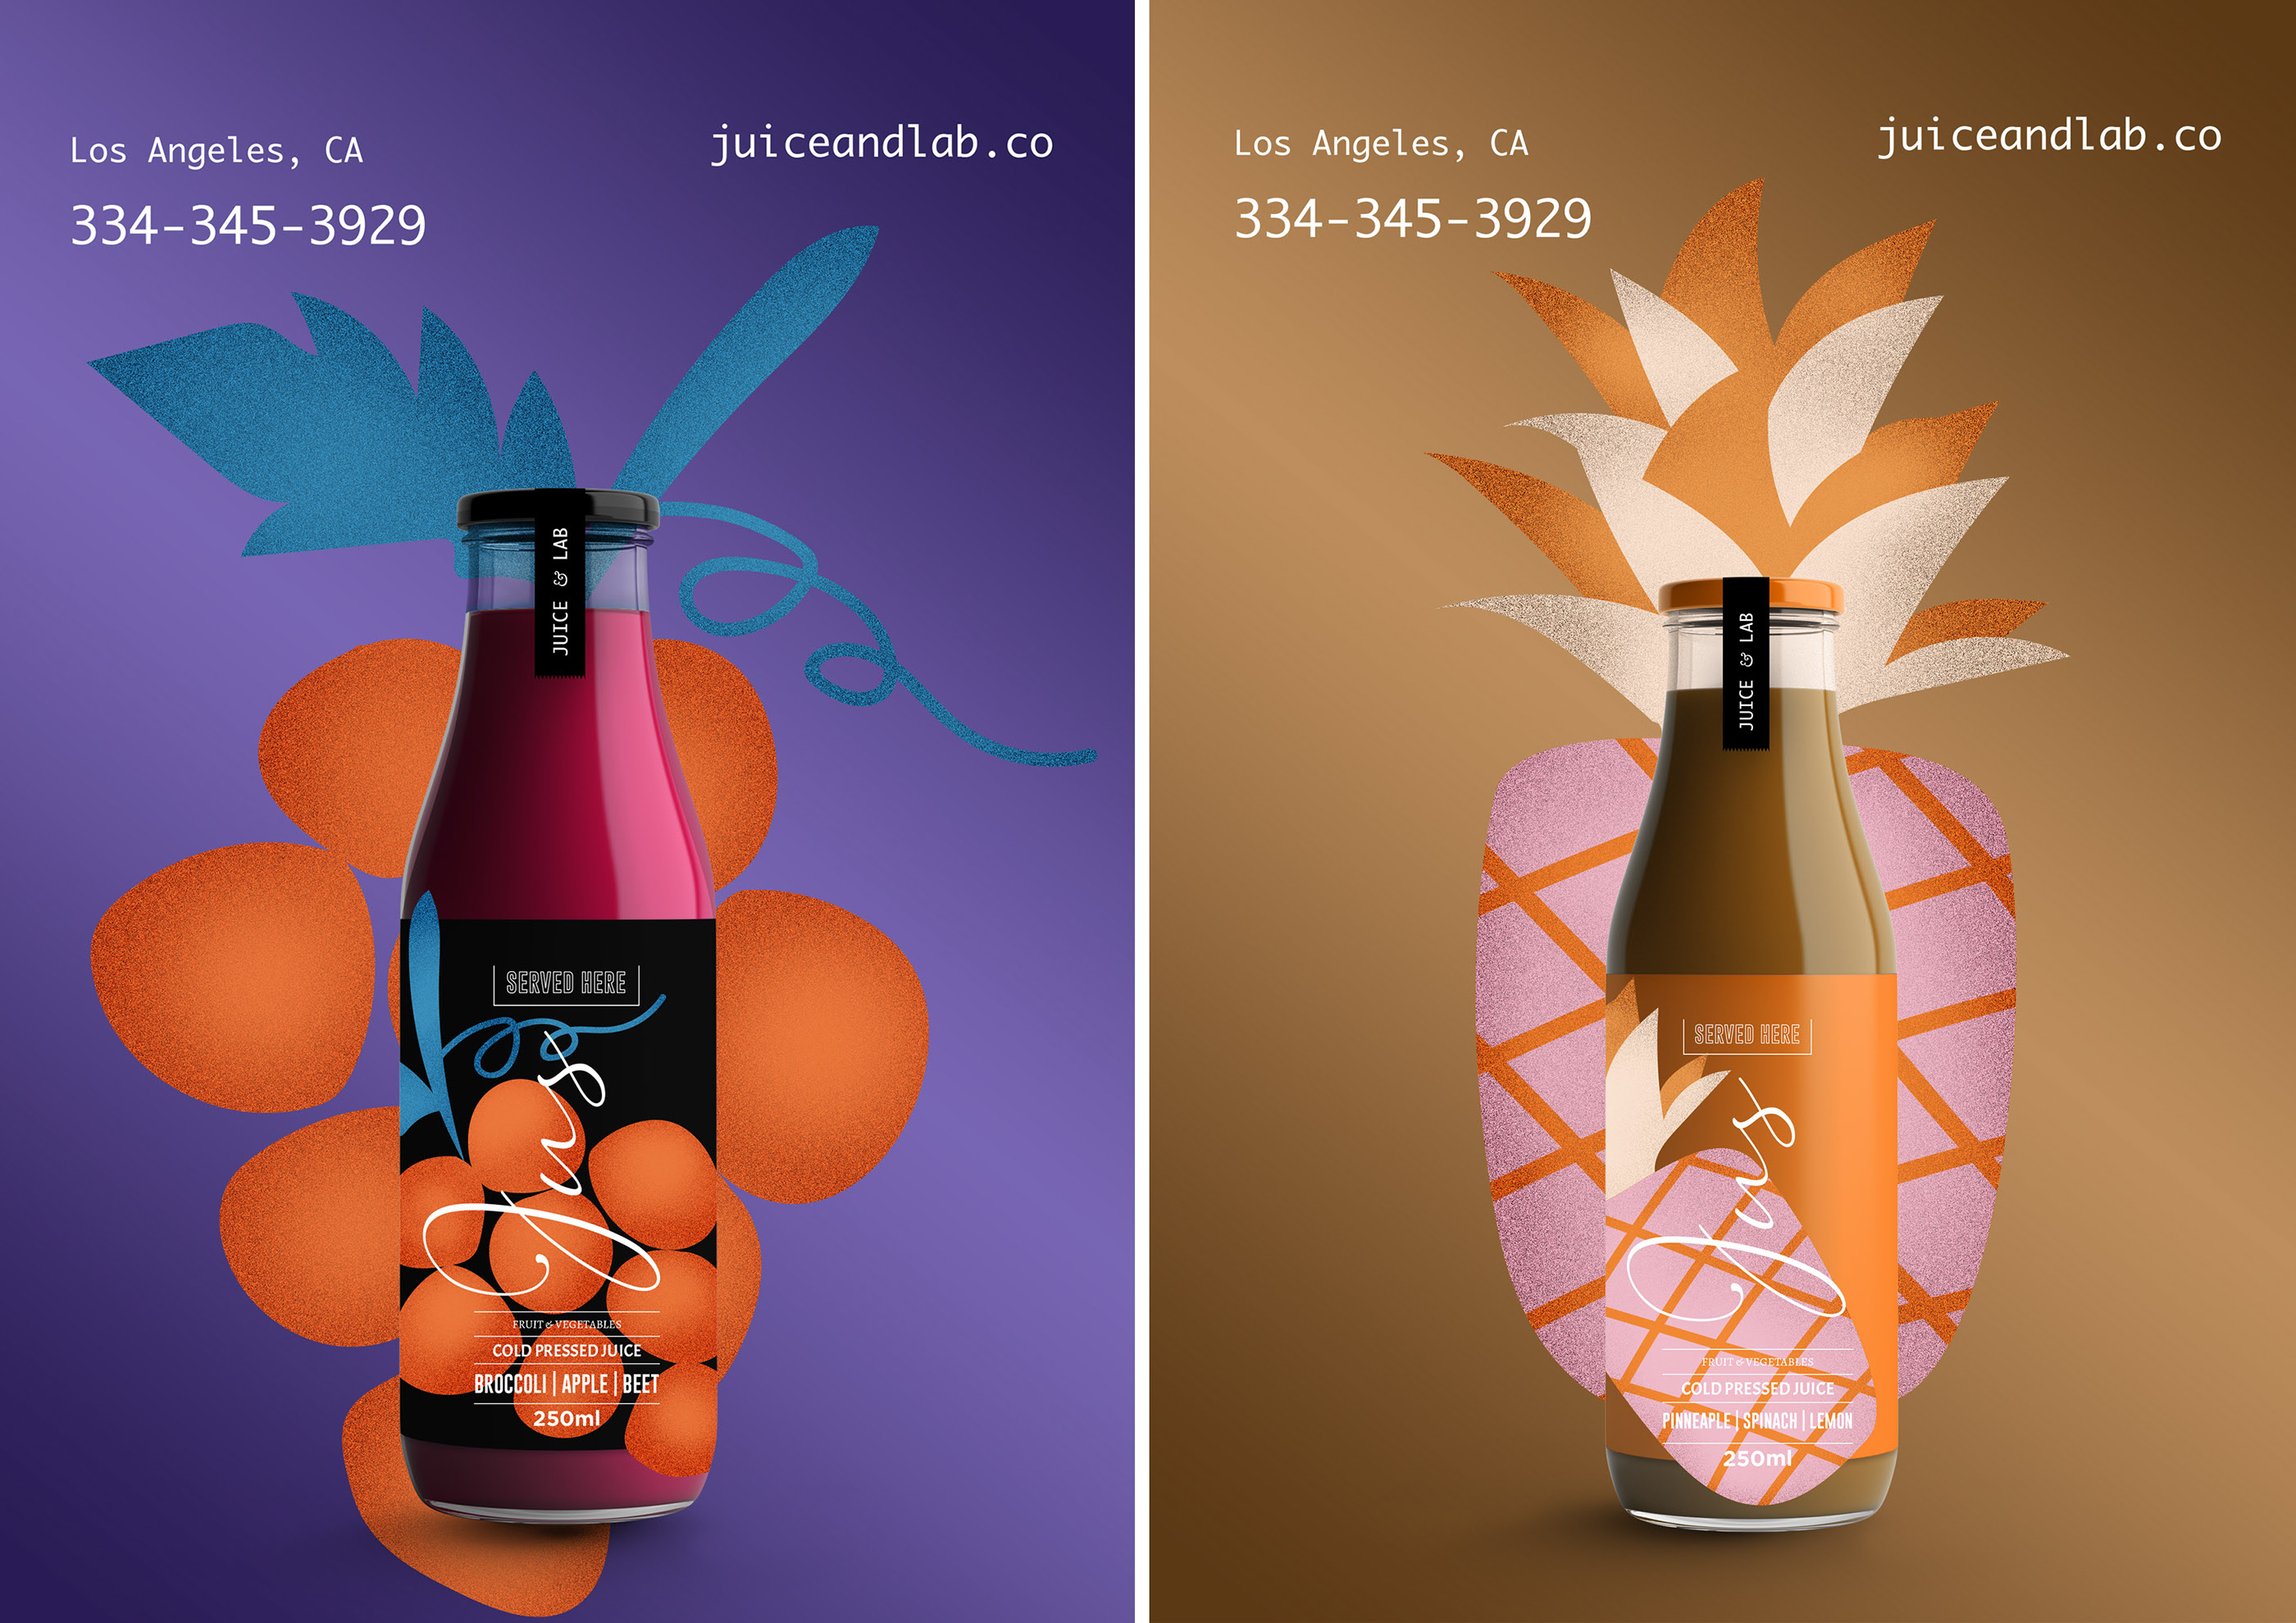 果汁饮料外包装瓶设计-14.jpg